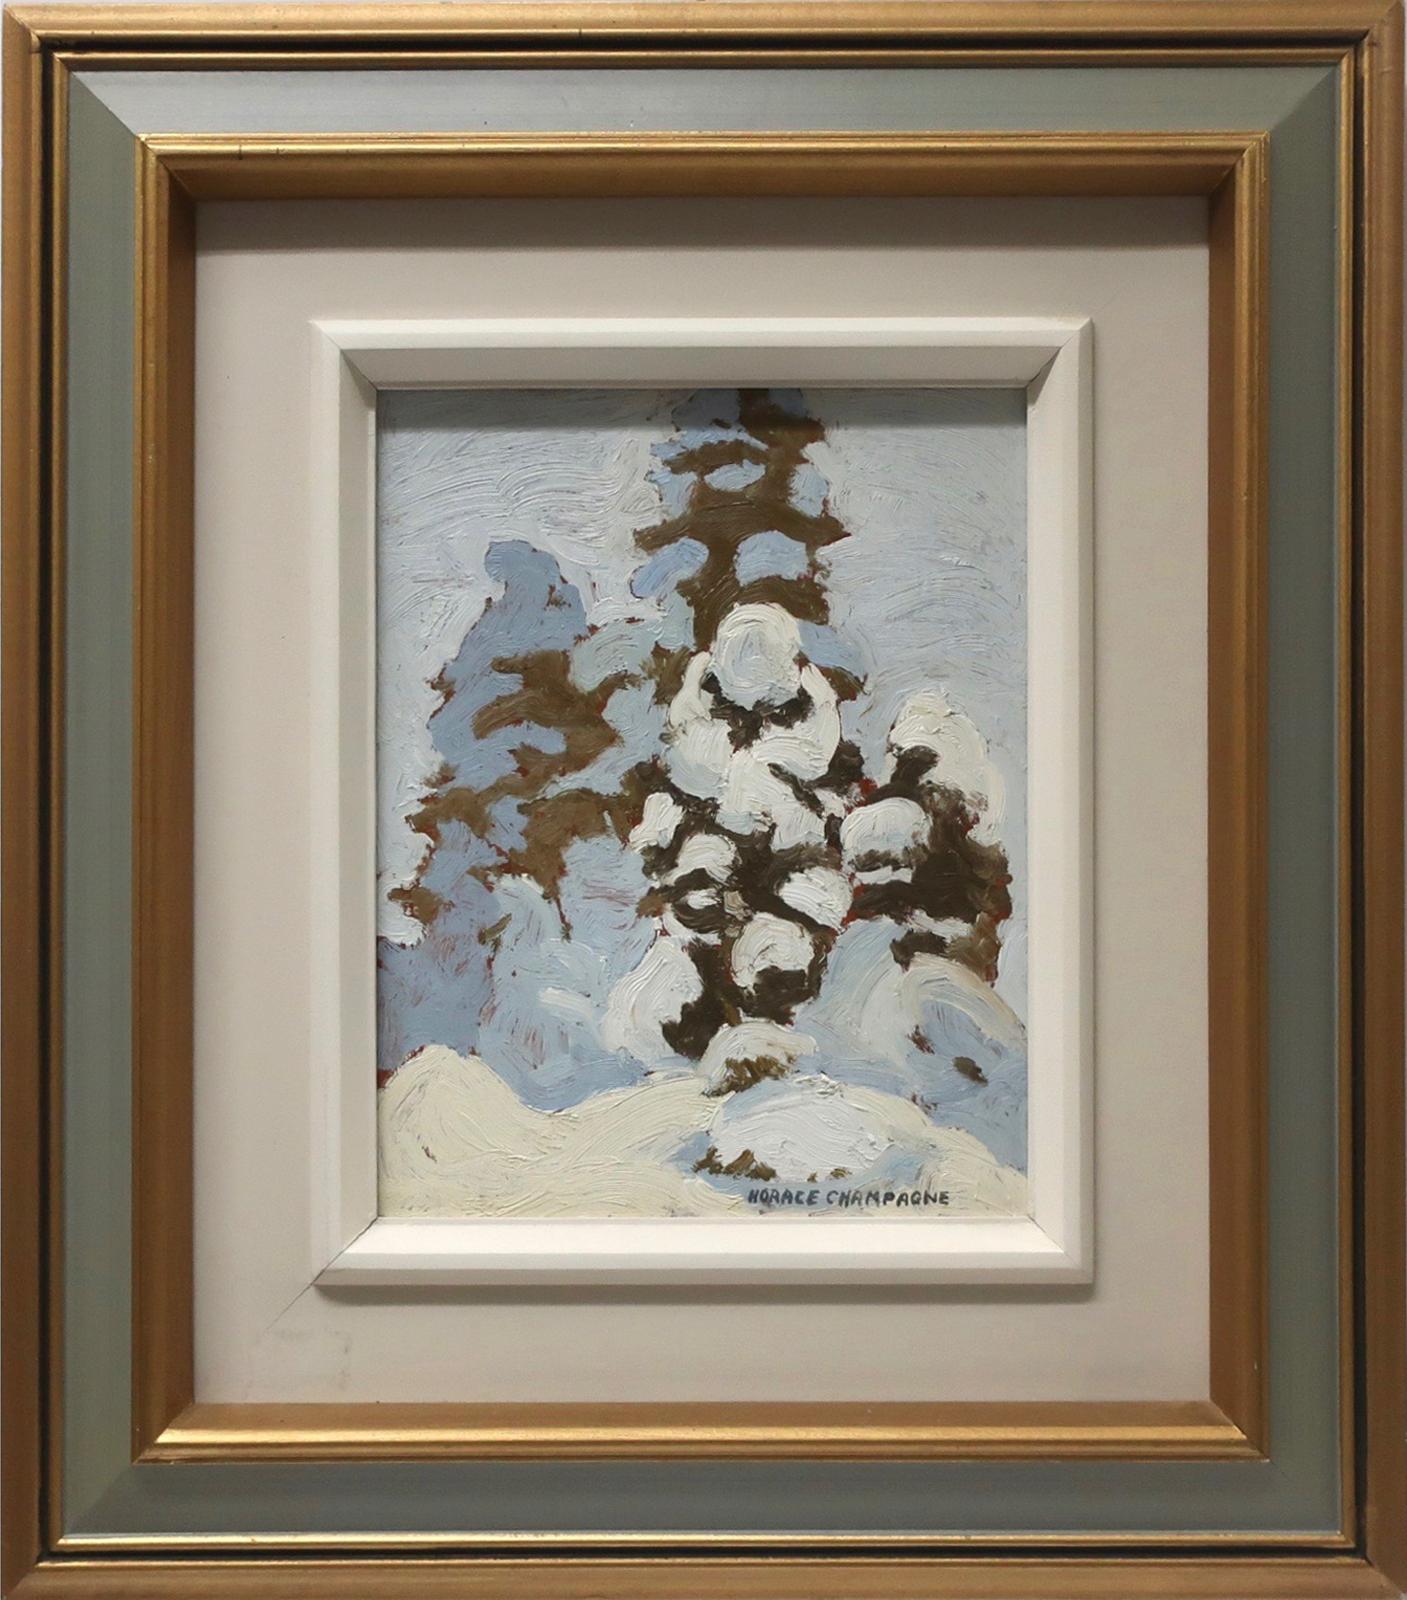 Horace Champagne (1937) - 'snow Sculptures' Park Des Laurentides, Quebec